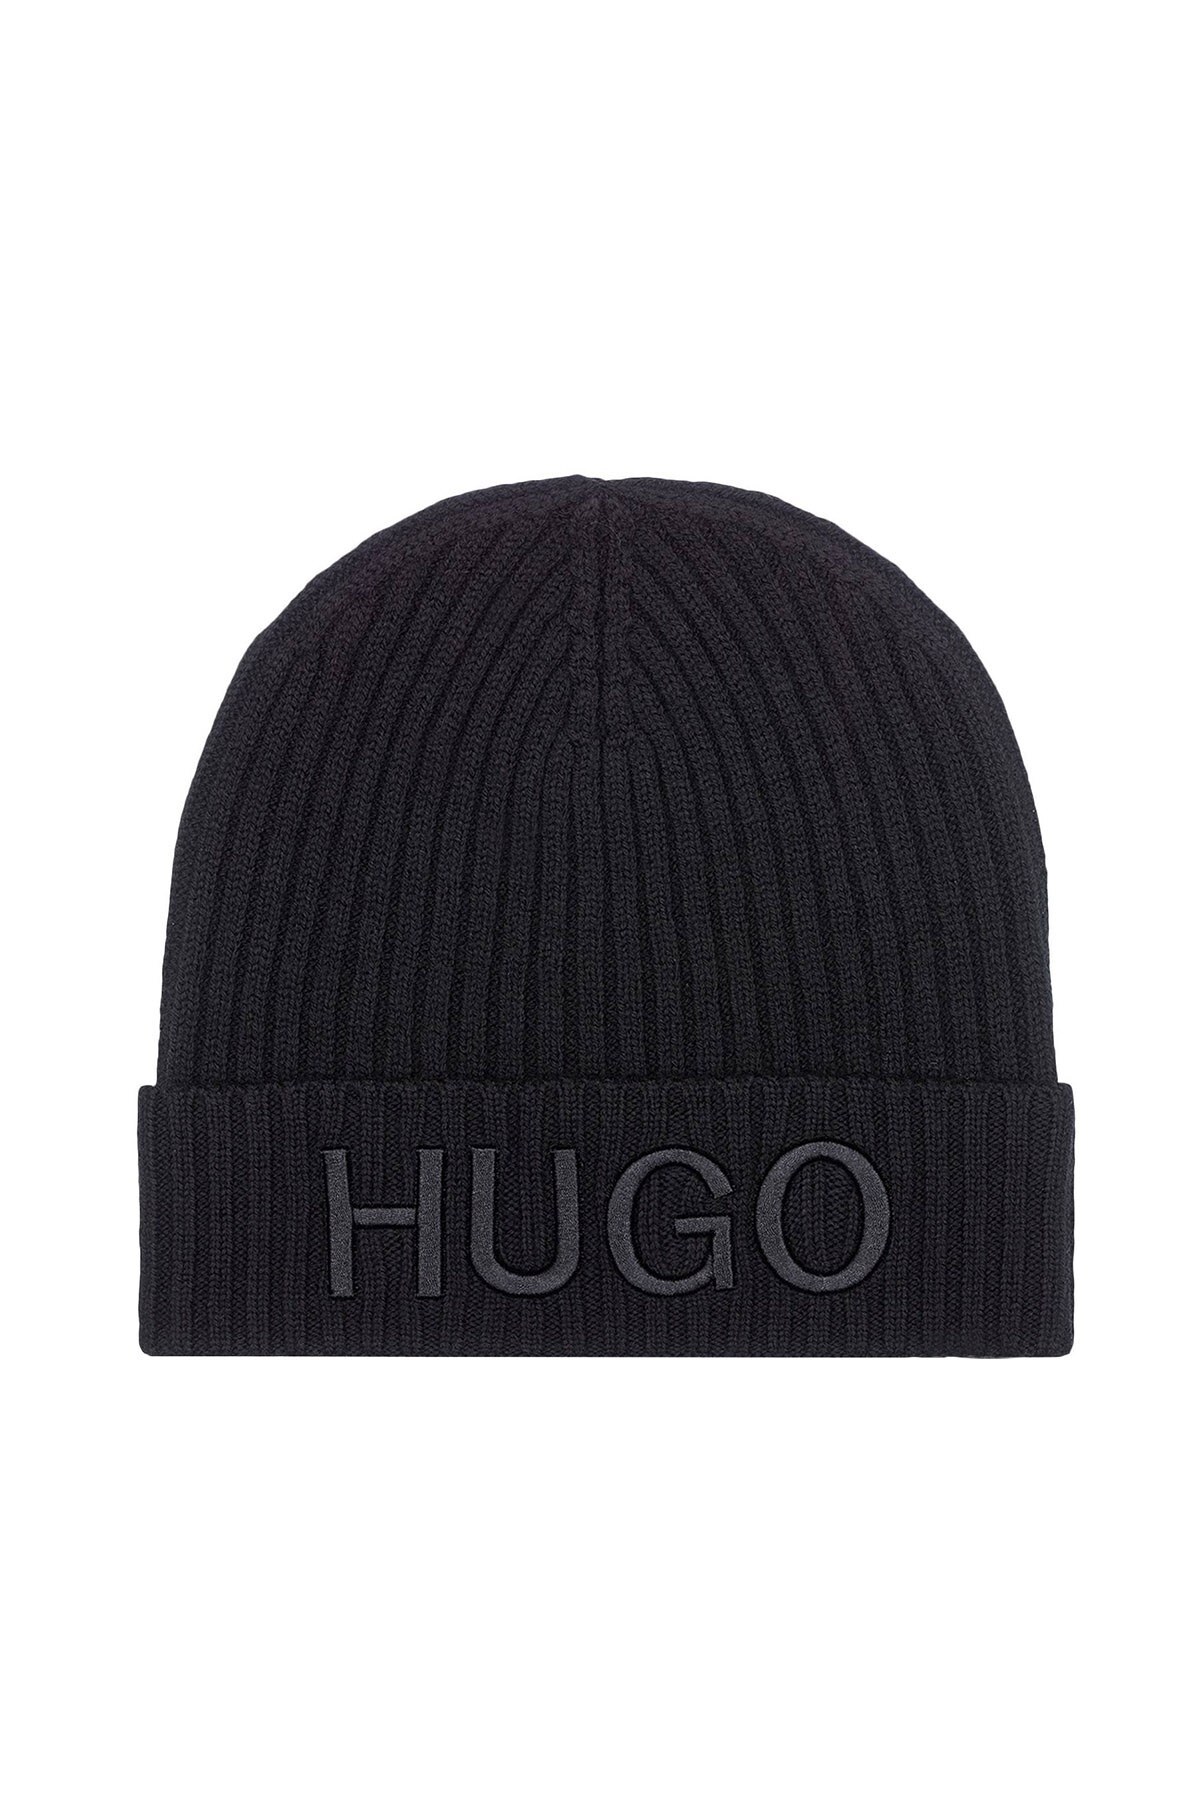 Hugo Boss Logo Baskılı % 100 Yün Erkek Bere 50438407 001 SİYAH